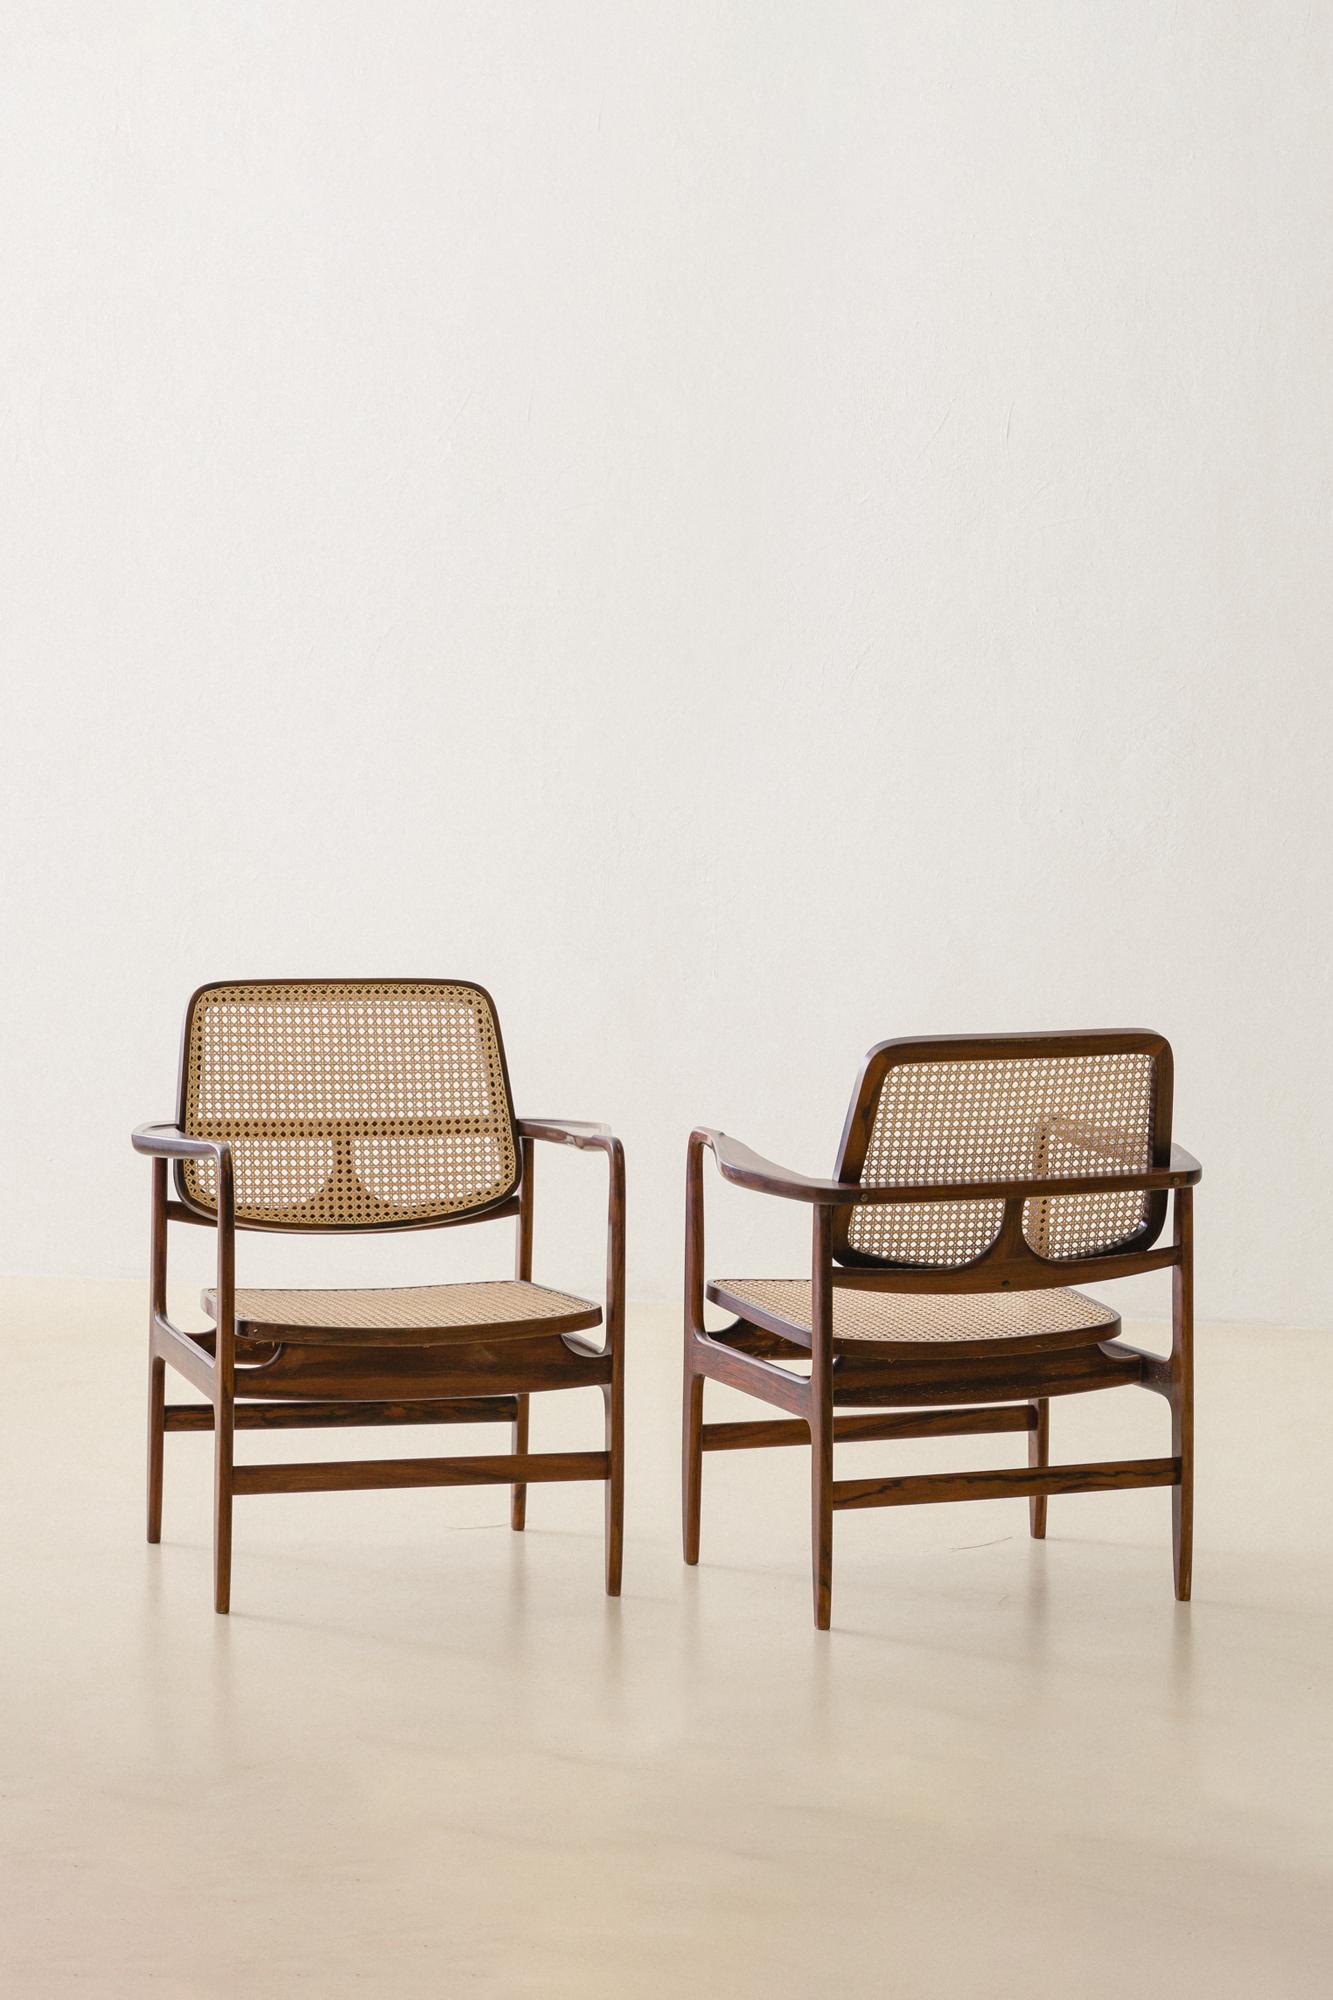 Der 1956 von Sergio Rodrigues (1927-2014) entworfene Sessel Oscar ist eine Hommage an Oscar Niemeyer (1907-2012), einen der wichtigsten brasilianischen Architekten in der Entwicklung der modernen Architektur.

Der Sessel Oscar ist eines der